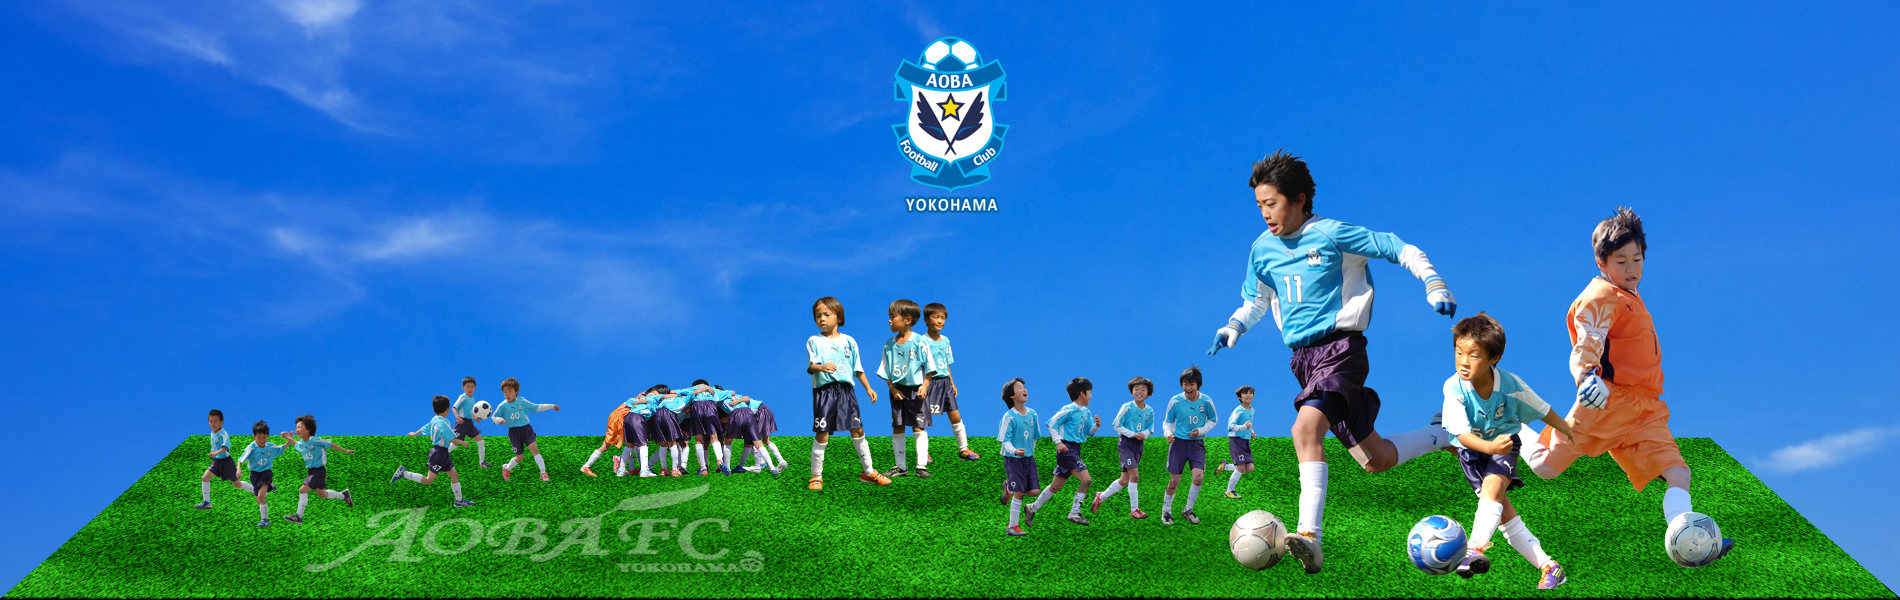 青葉fc公式ホームページ 青葉フットボールクラブ 青葉fc は 明るく 楽しく 元気よく をモットーに 神奈川県横浜市青葉区のすすき野小学校をホームグラウンドとして活動している少年サッカーチームです